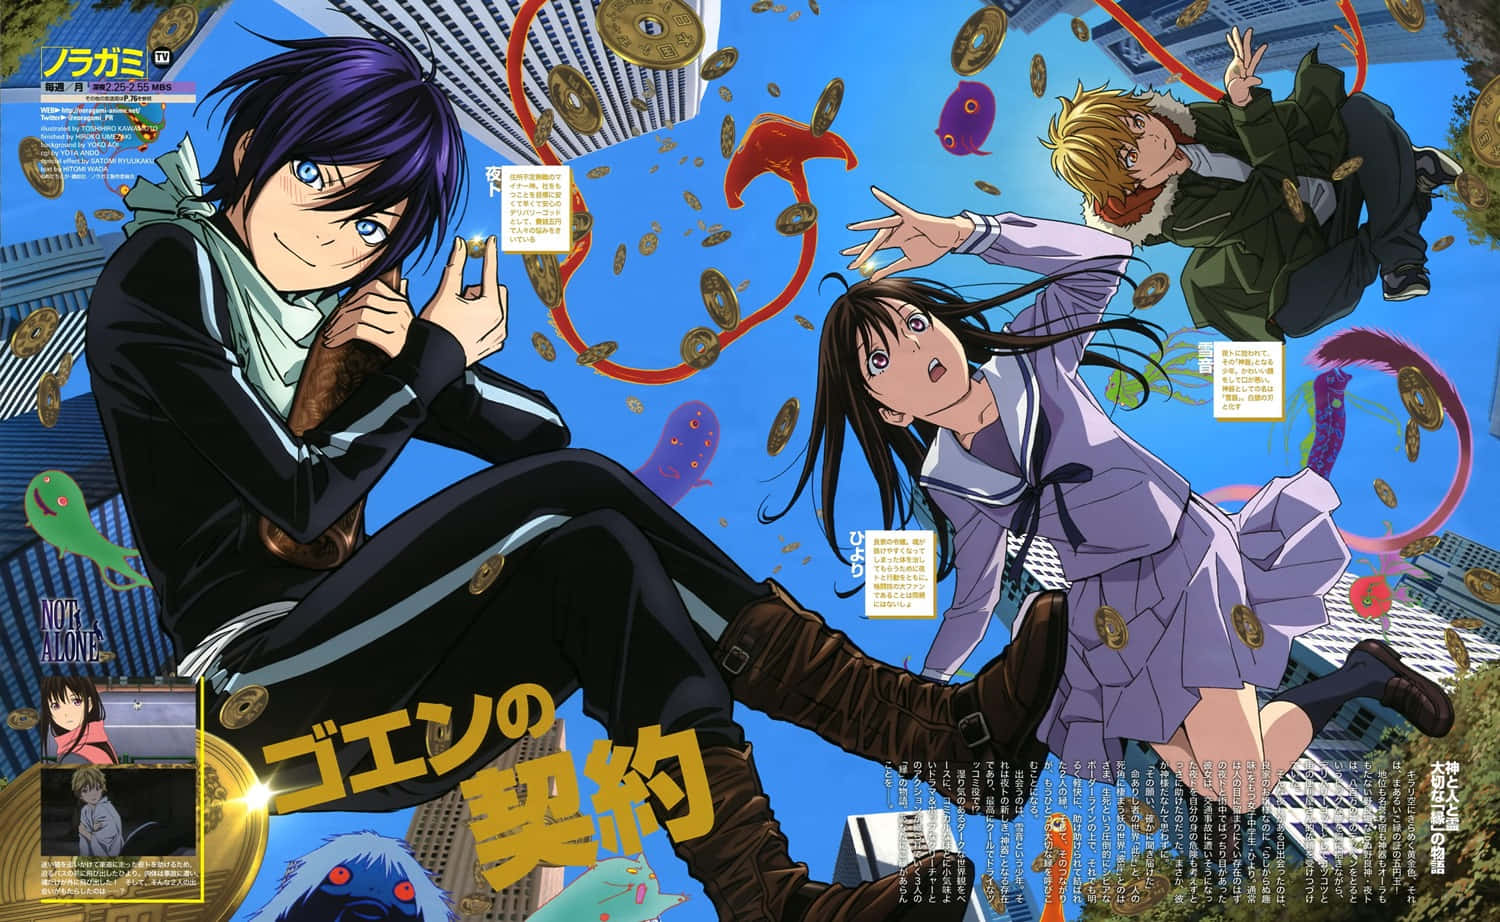 Einposter Für Ein Anime Mit Zwei Personen In Der Luft